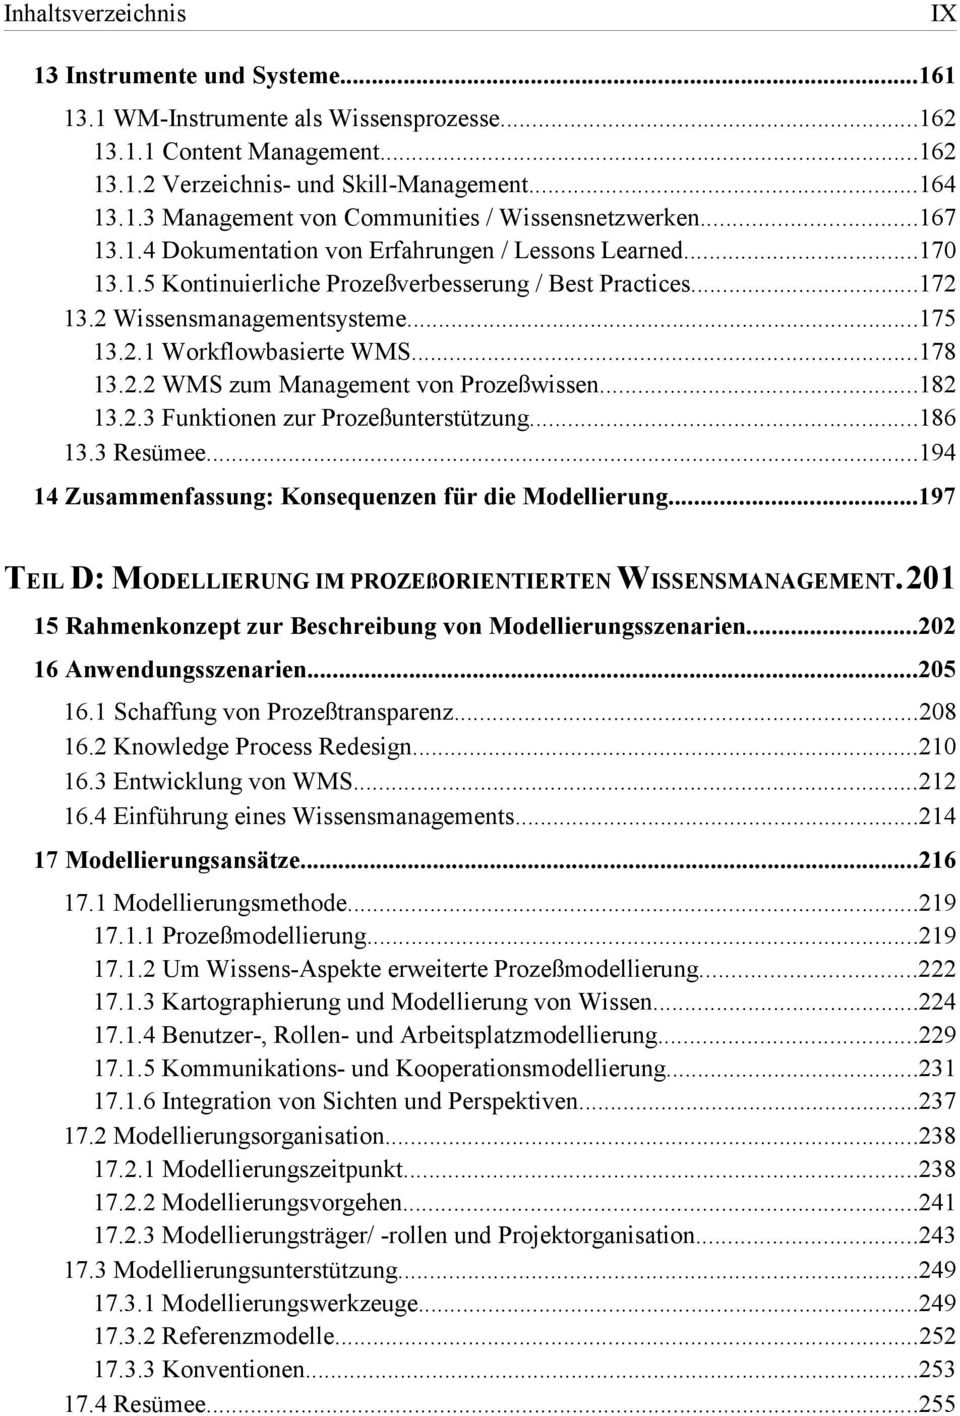 ..178 13.2.2 WMS zum Management von Prozeßwissen...182 13.2.3 Funktionen zur Prozeßunterstützung...186 13.3 Resümee...194 14 Zusammenfassung: Konsequenzen für die Modellierung.